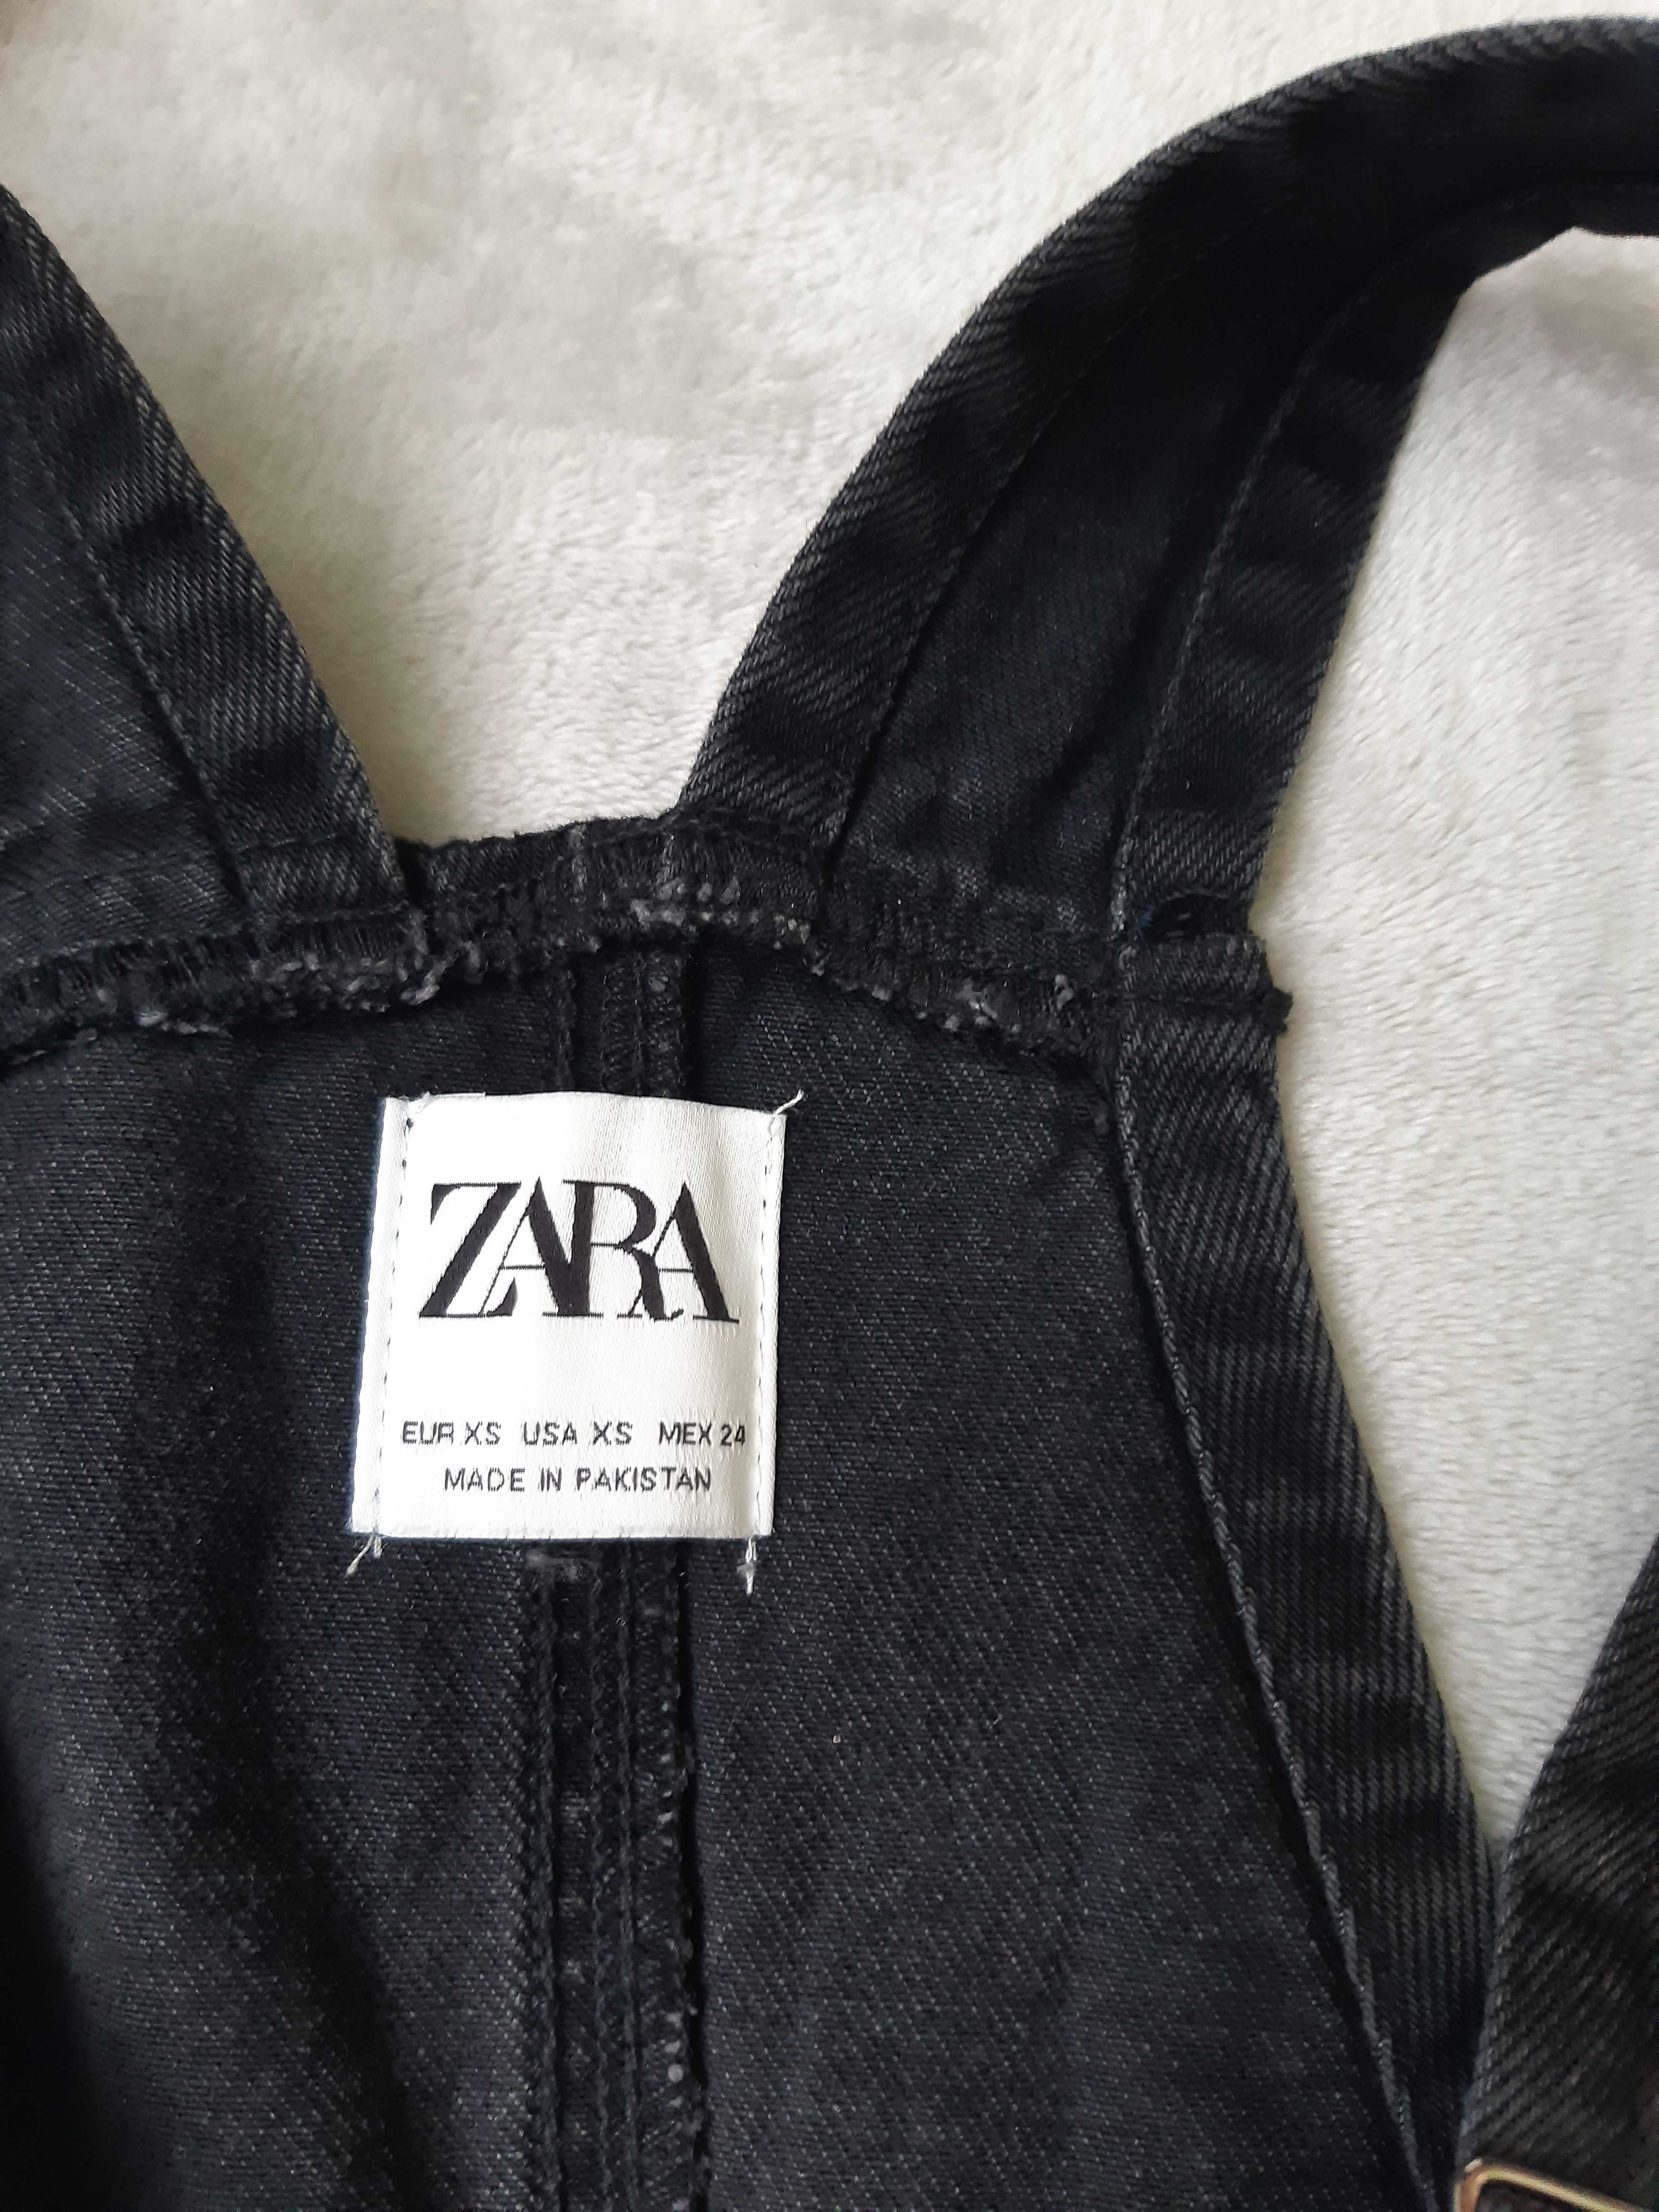 Джинсовый сарафан Zara+ футболка в подарок